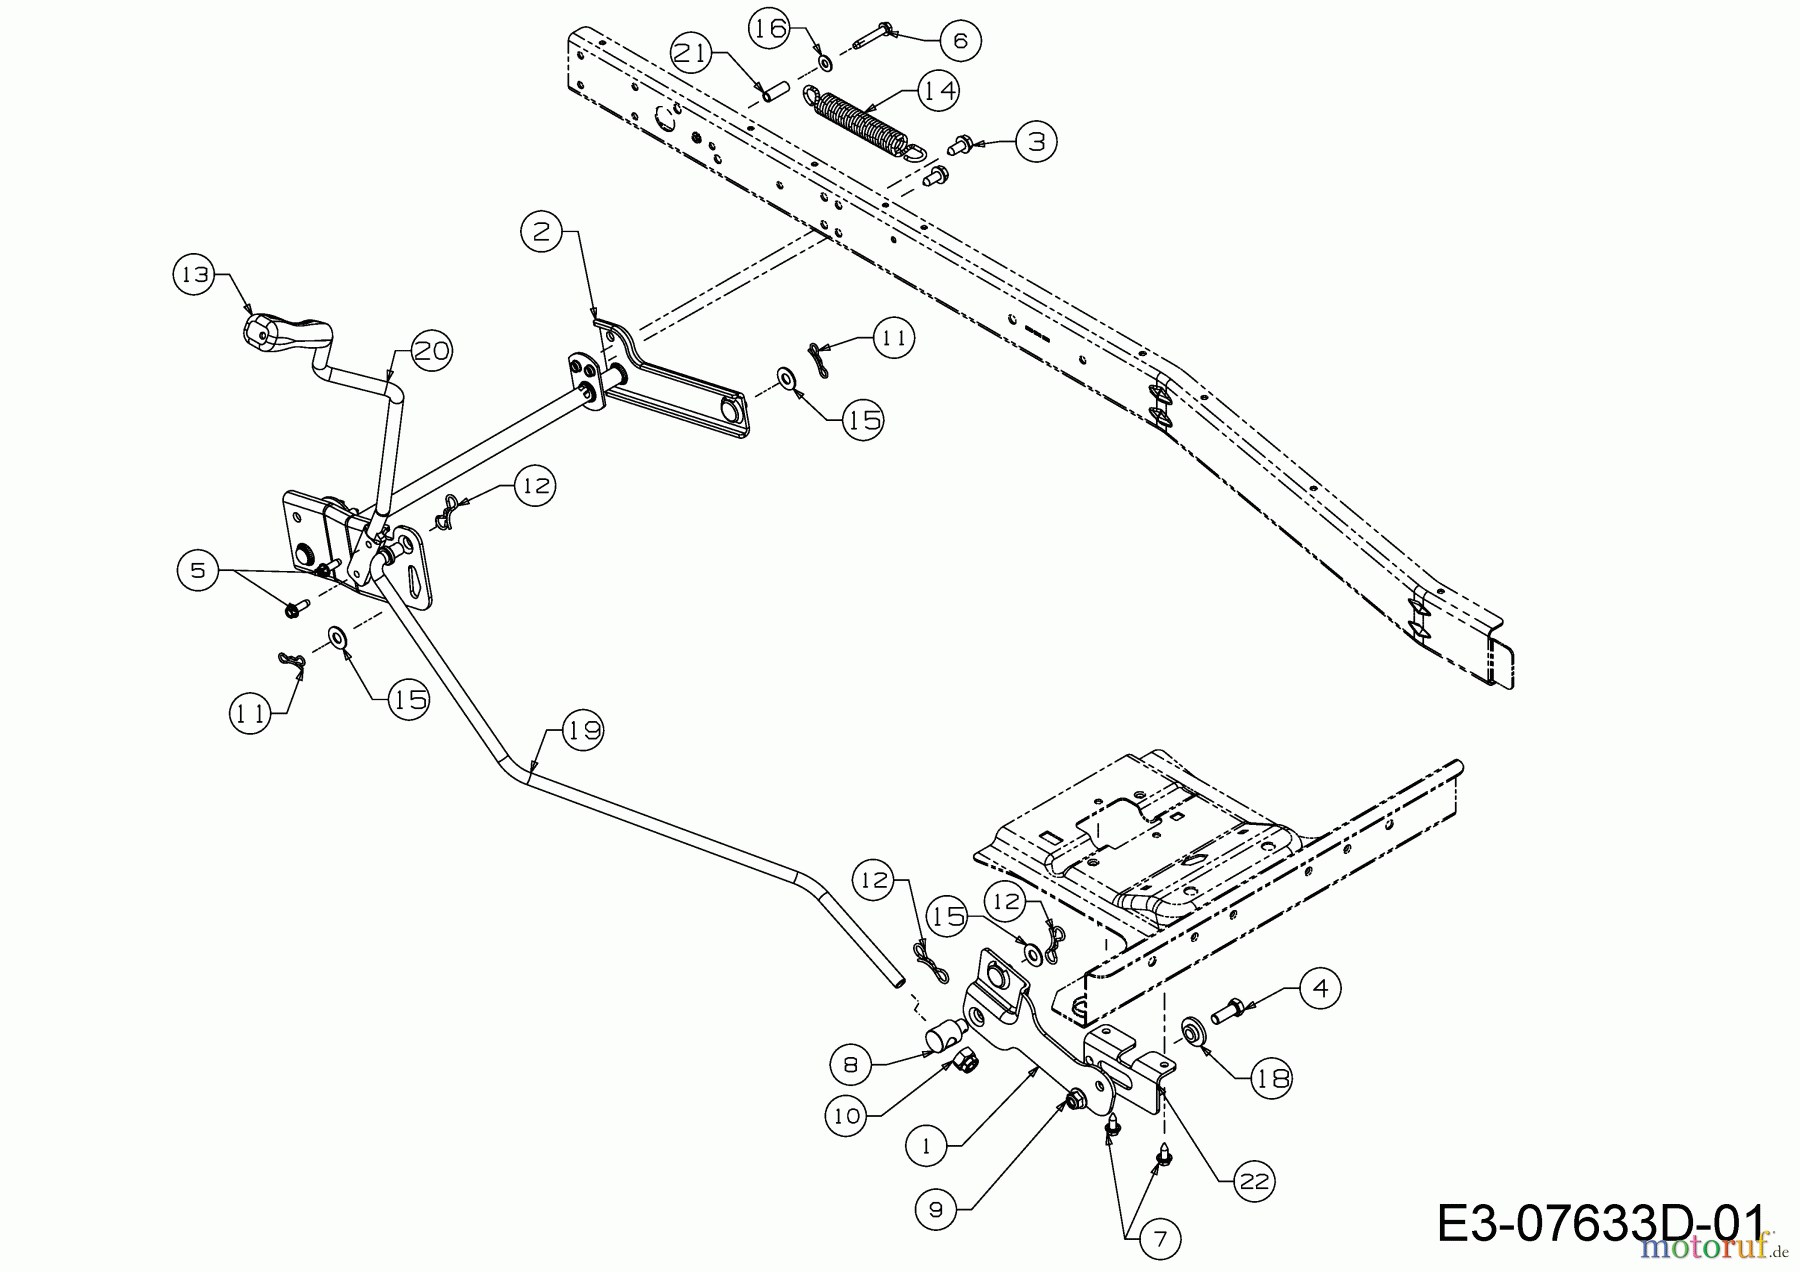  WOLF-Garten Expert Rasentraktoren Scooter Pro 13B226HD650  (2015) Mähwerksaushebung